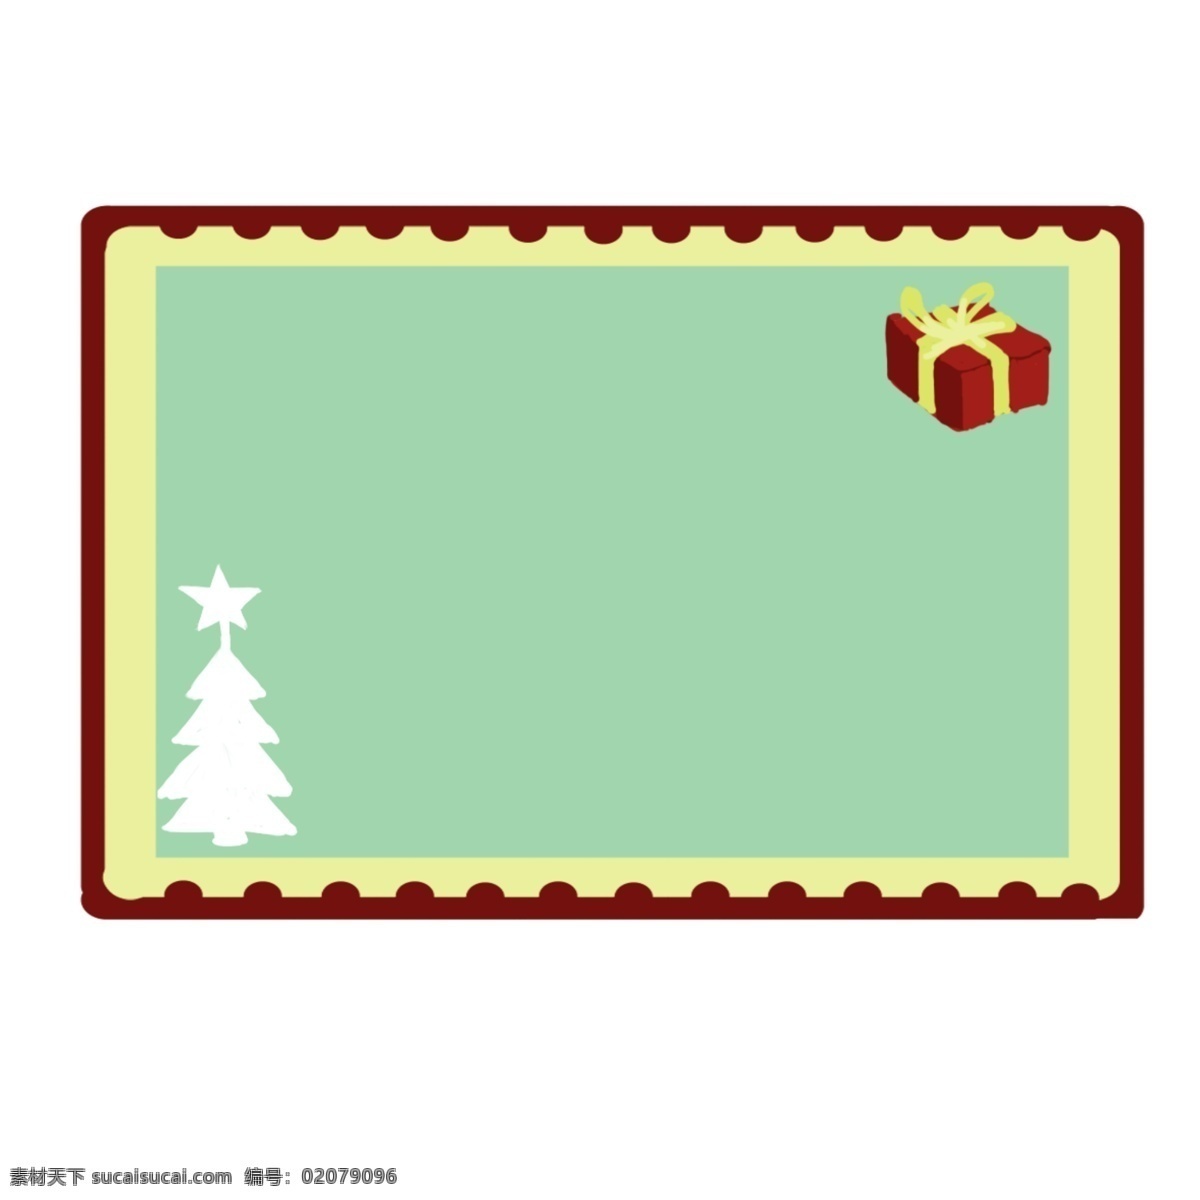 圣诞 礼品盒 装饰 边框 圣诞节边框 红色边框 圣诞树装饰 小清新边框 红色 节日边框